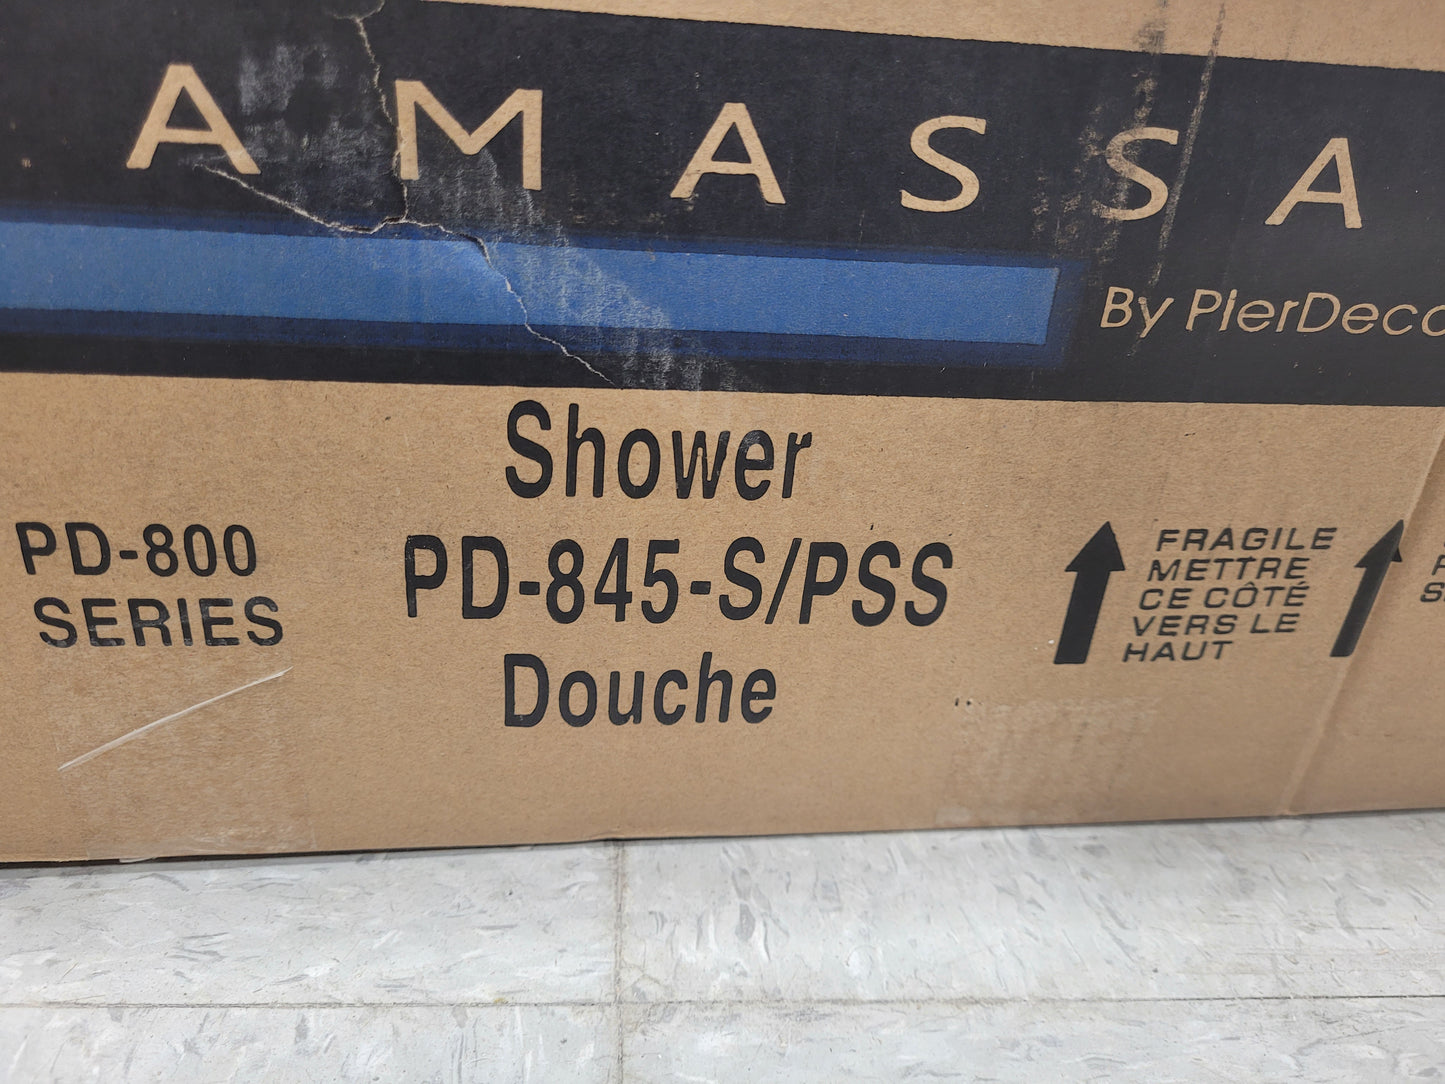 PD-845-S/PSS (Colonne de douche démo #9)